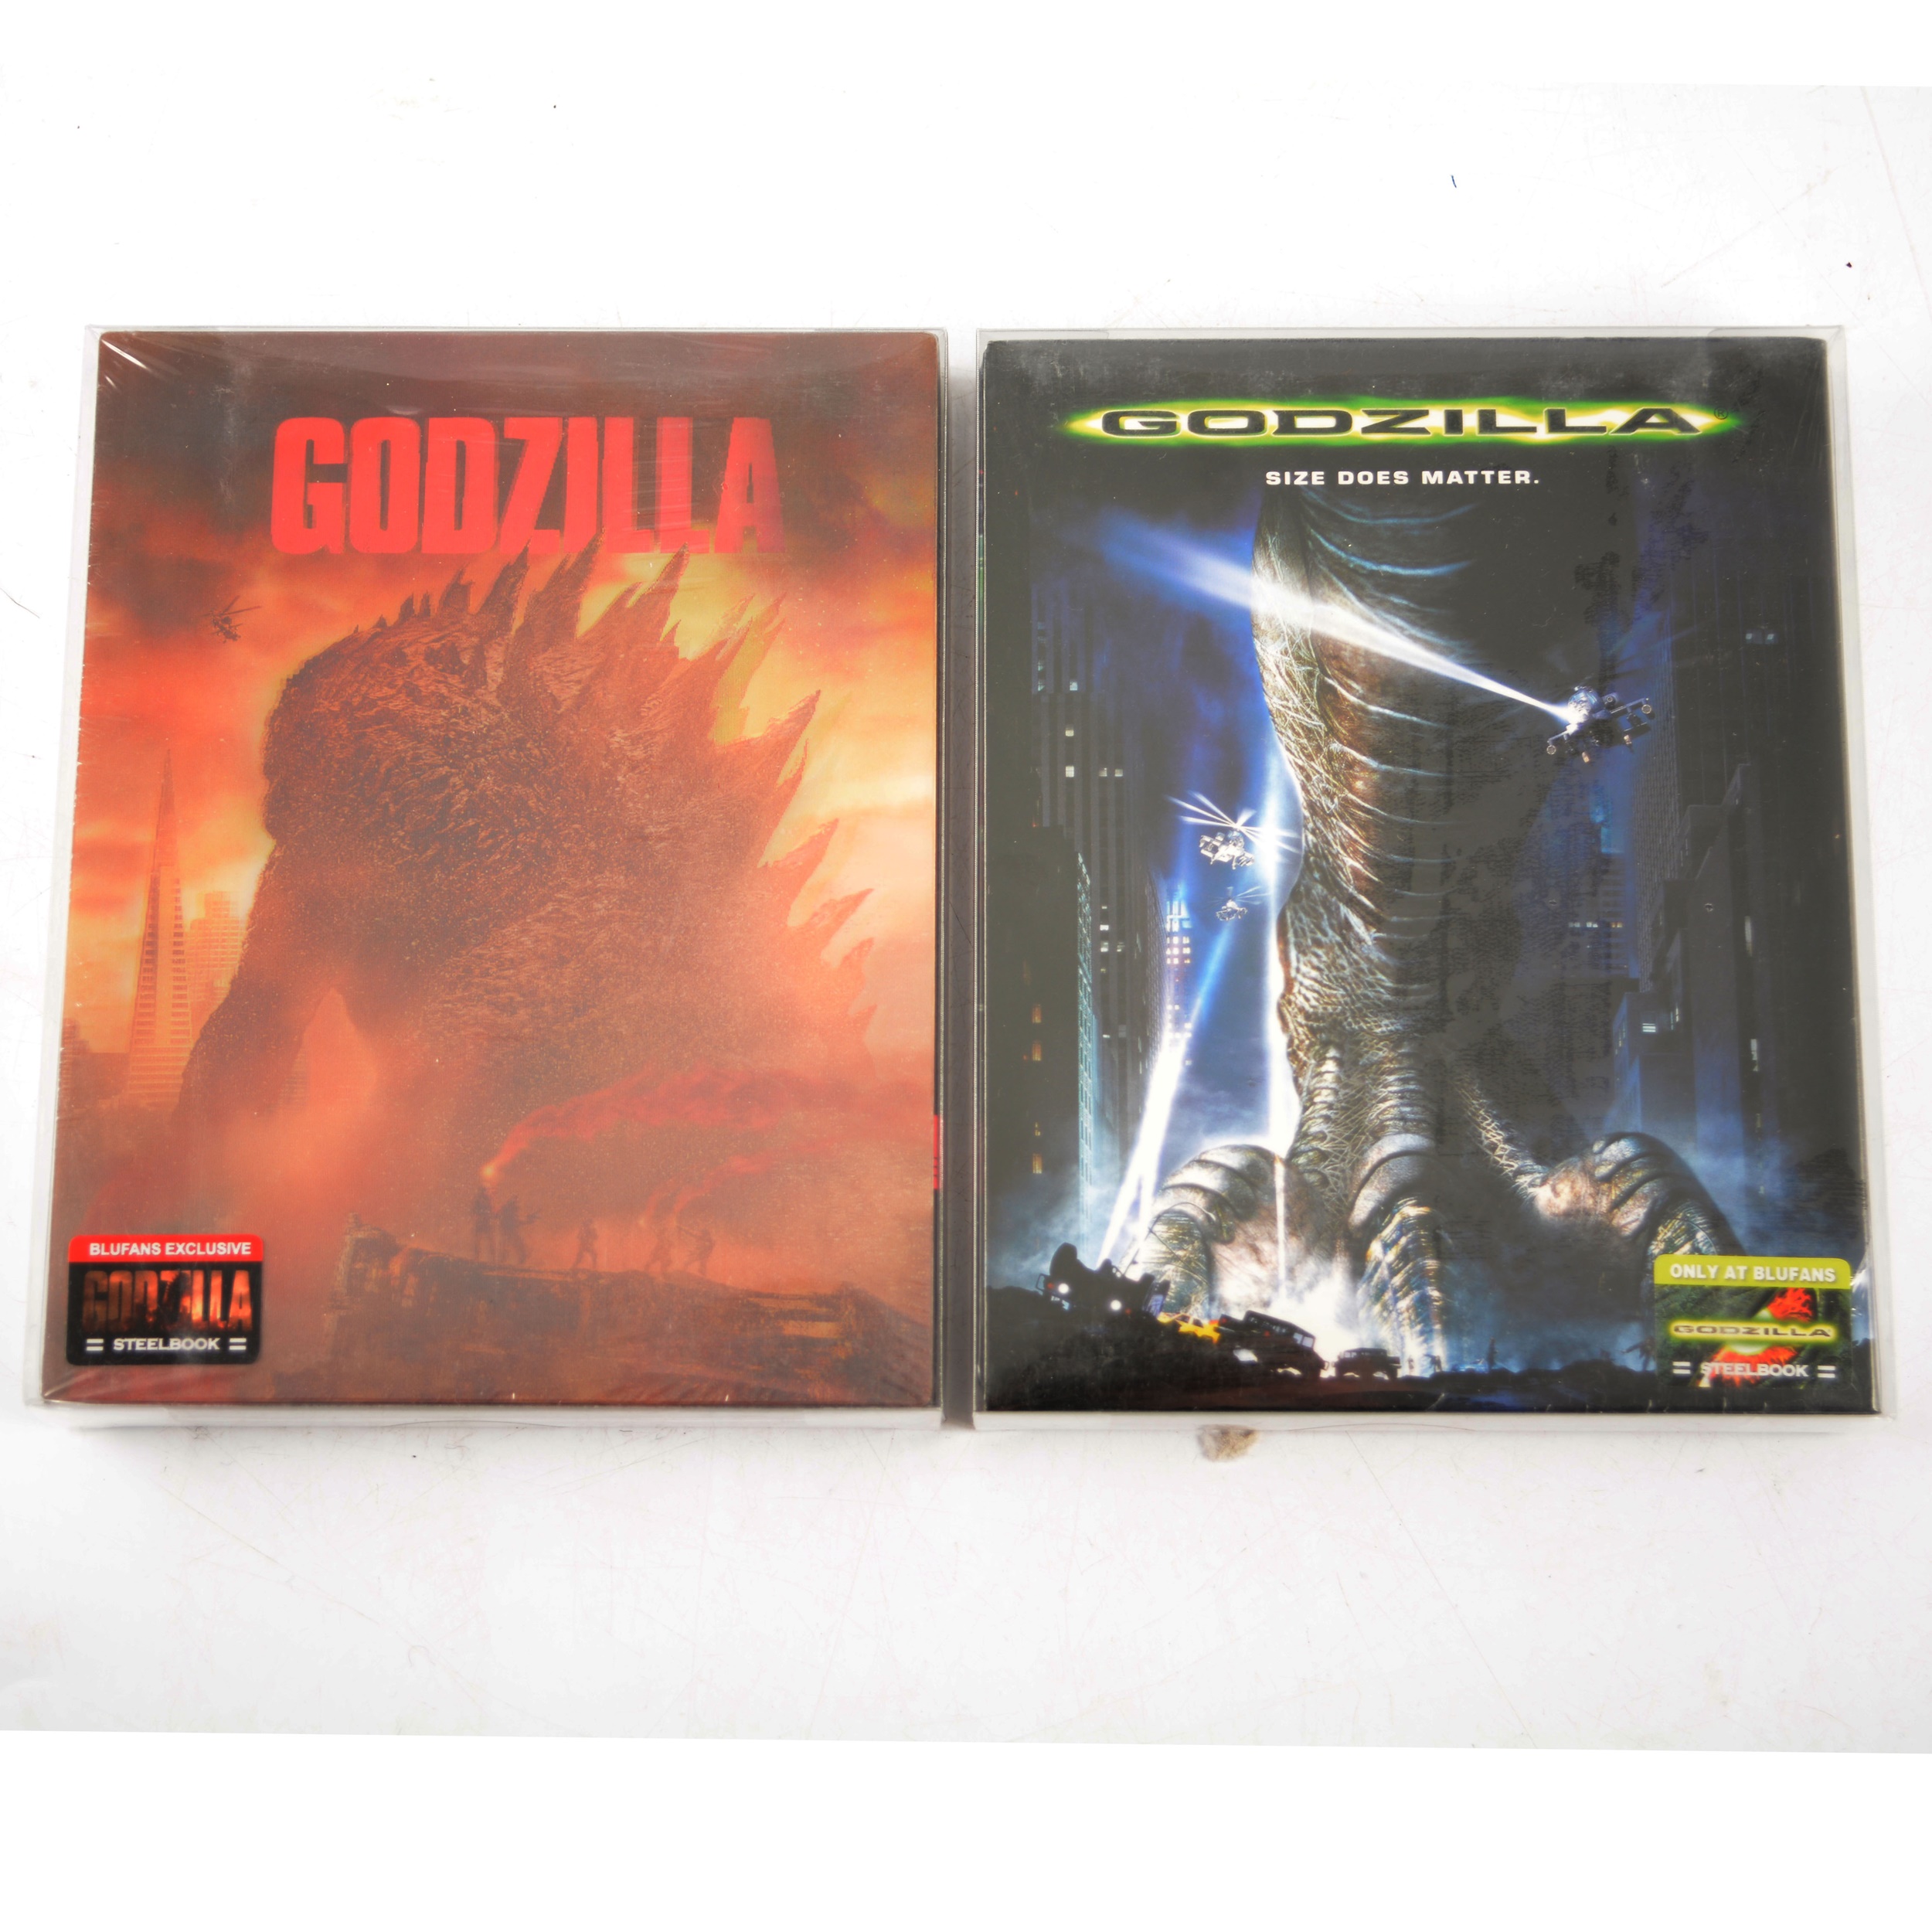 Blufans Exclusive Steelbook Blu-rays Godzilla 'Size Does Matter' and Godzilla